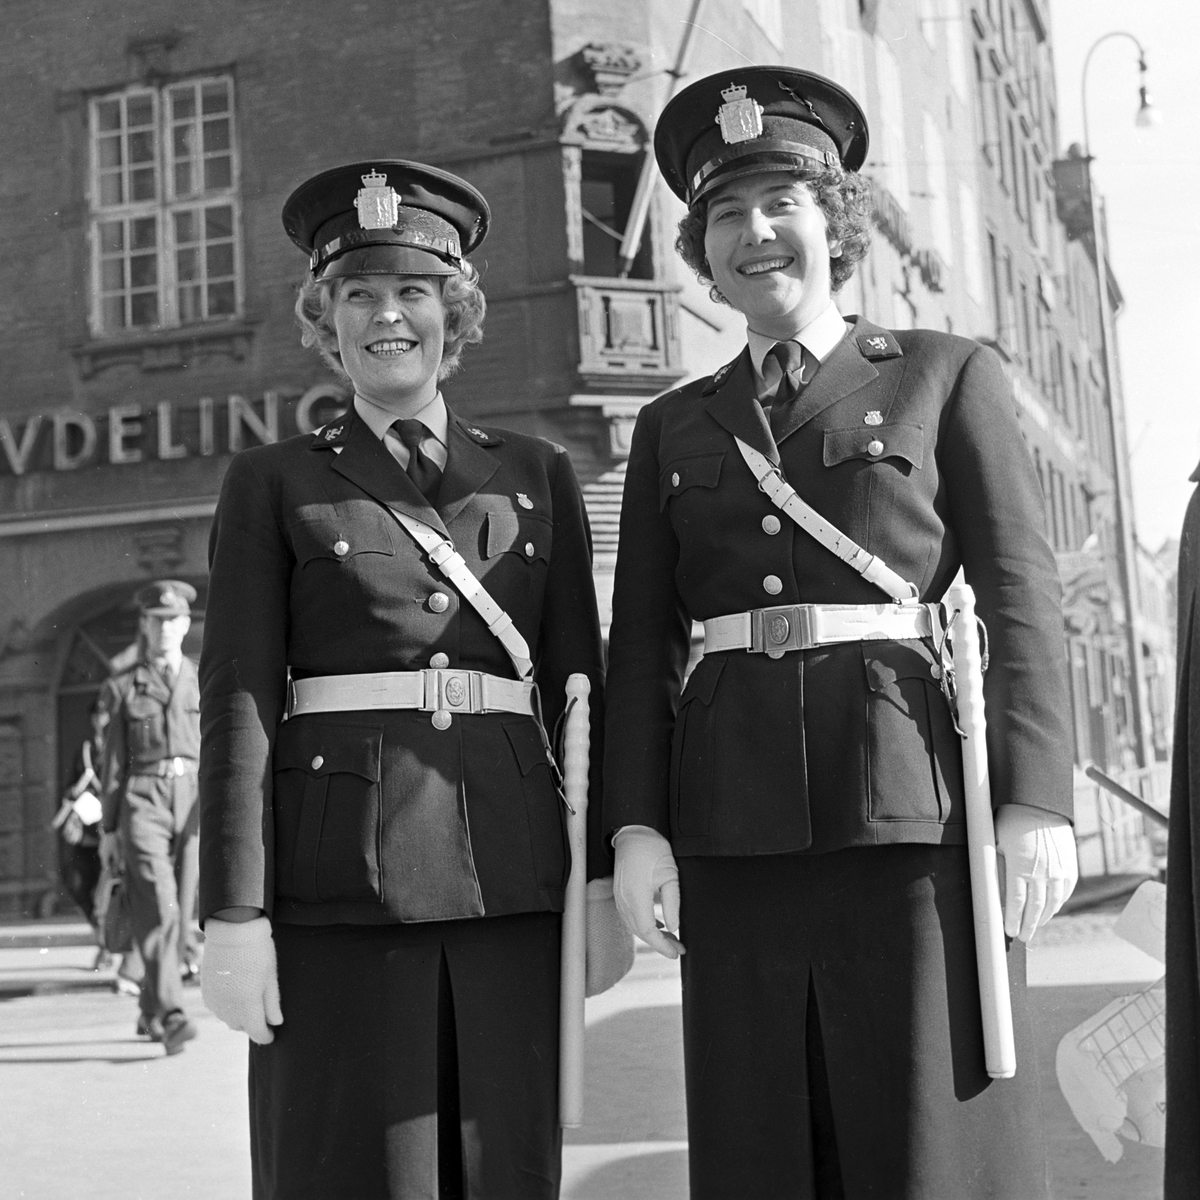 Serie. Kvinnelig trafikkpoliti. Én av dem dirigerer trafikken i krysset  Akersgata/Teatergata. Fotografert april 1962.

